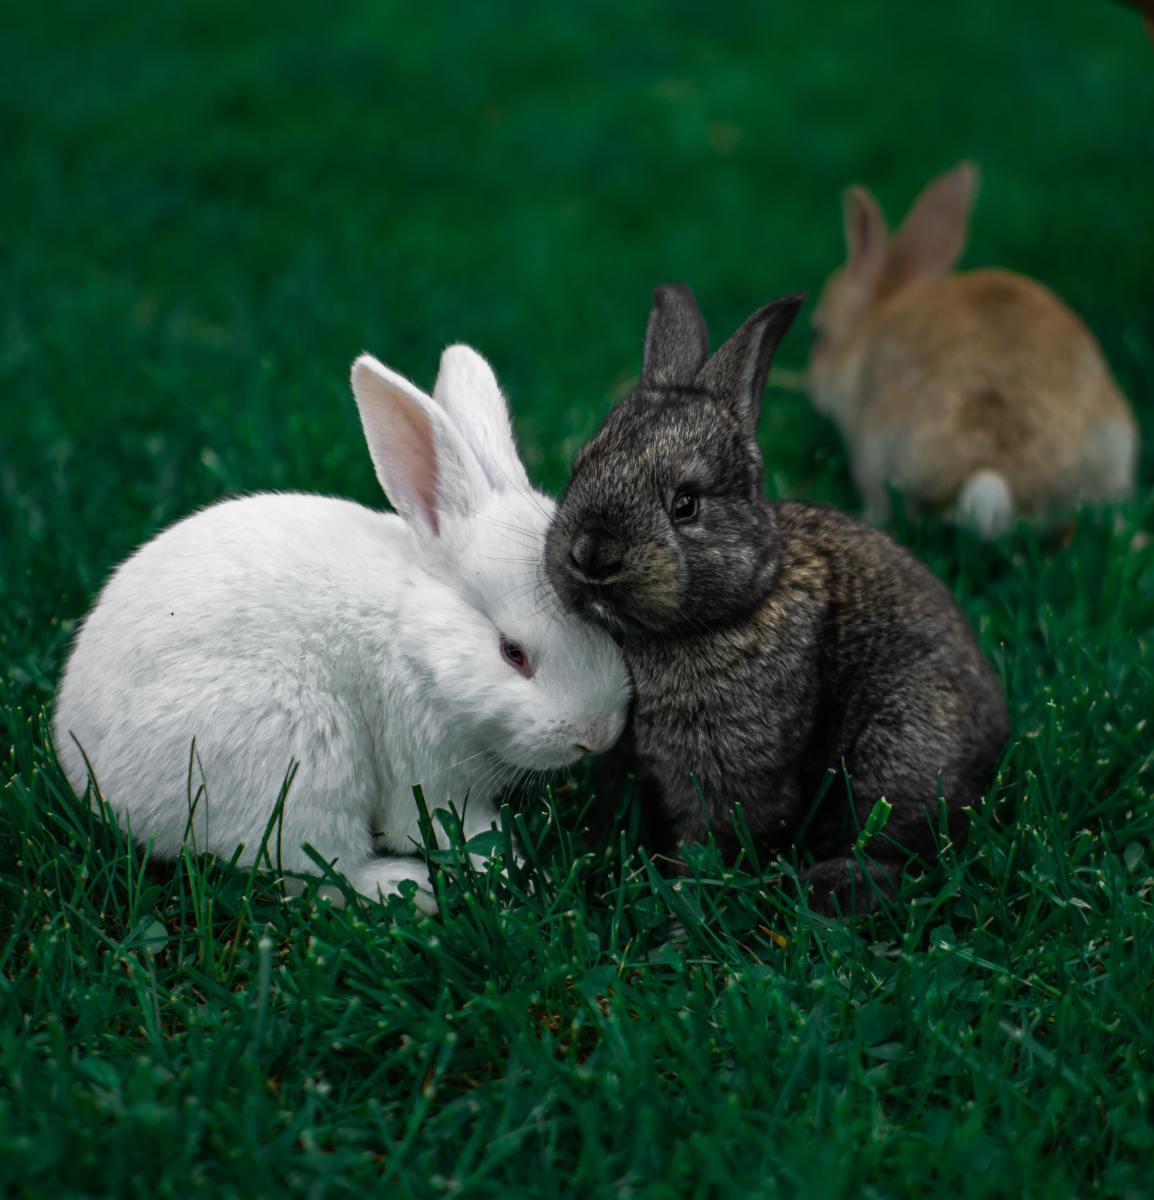 根据一些迷信说法，兔子可能是即将生育的预兆。